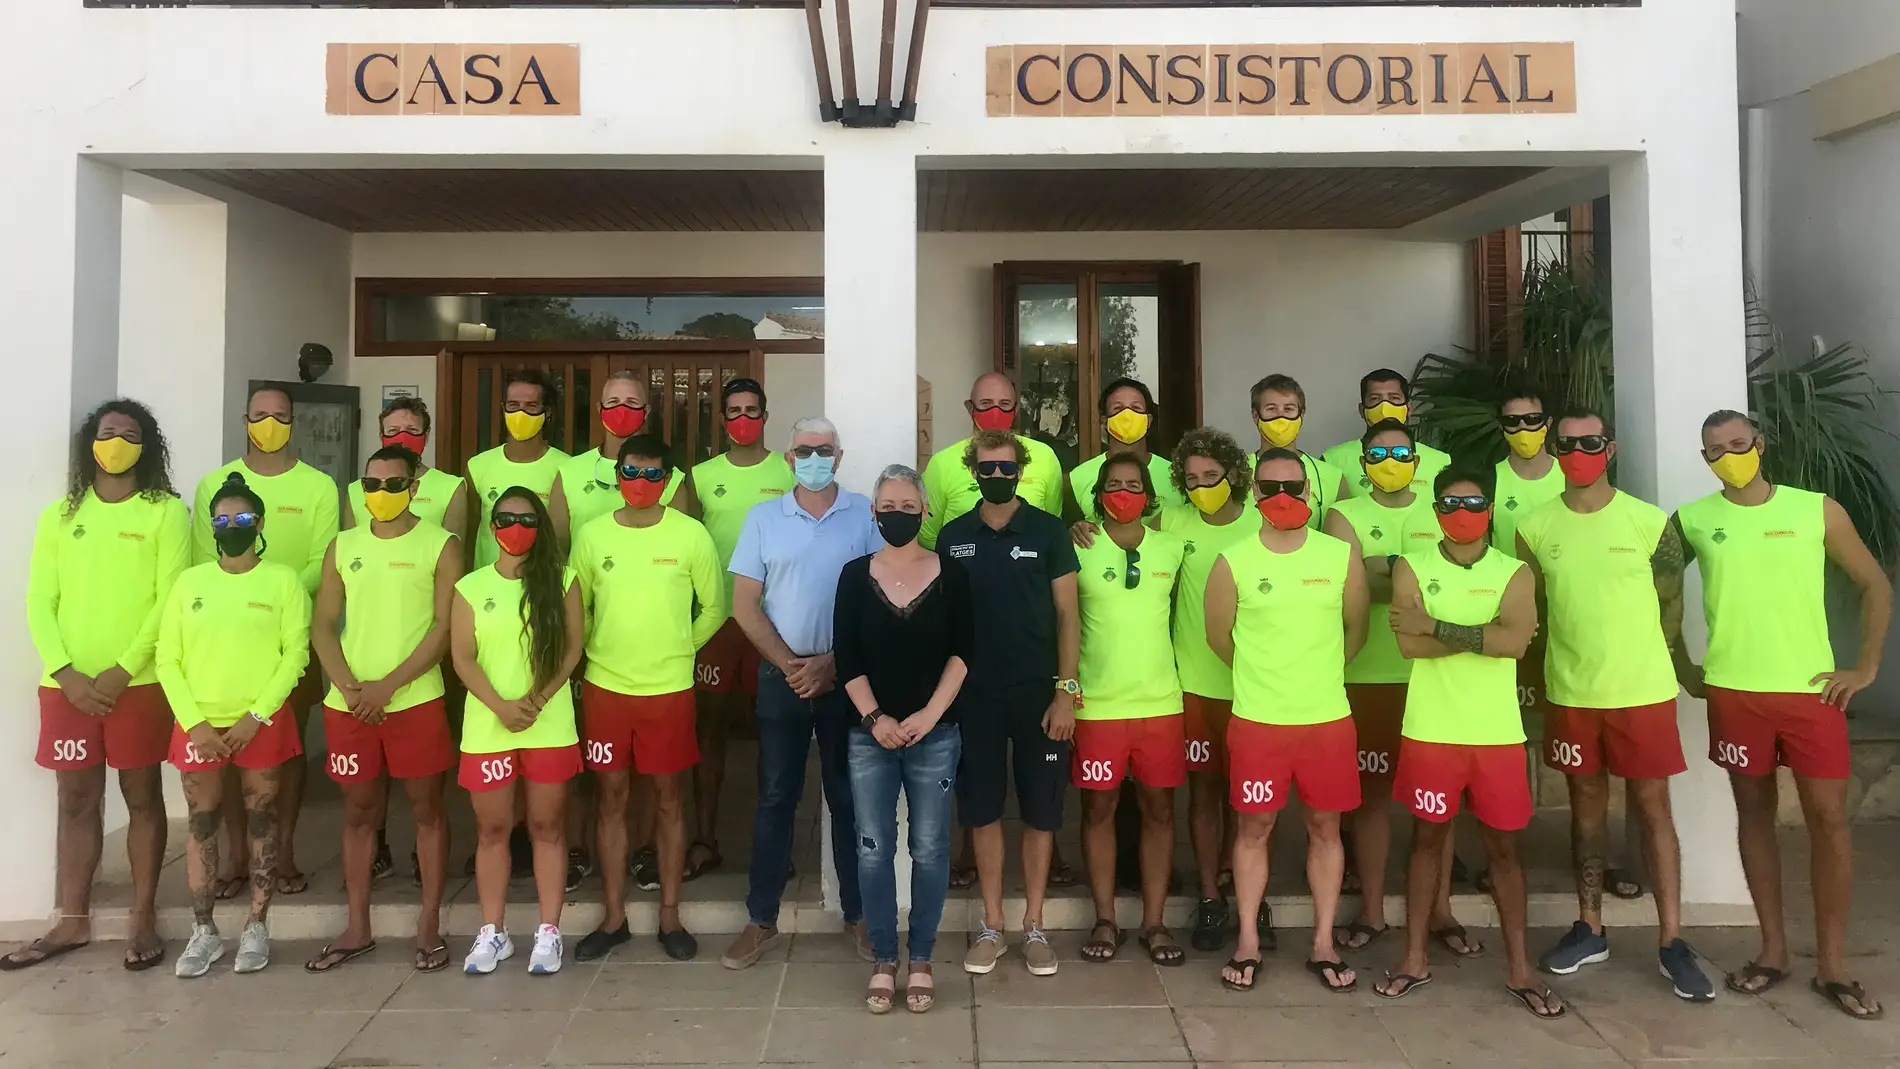 La presidenta del Consell de Formentera desea a los socorristas de playa "mucha suerte" para la temporada